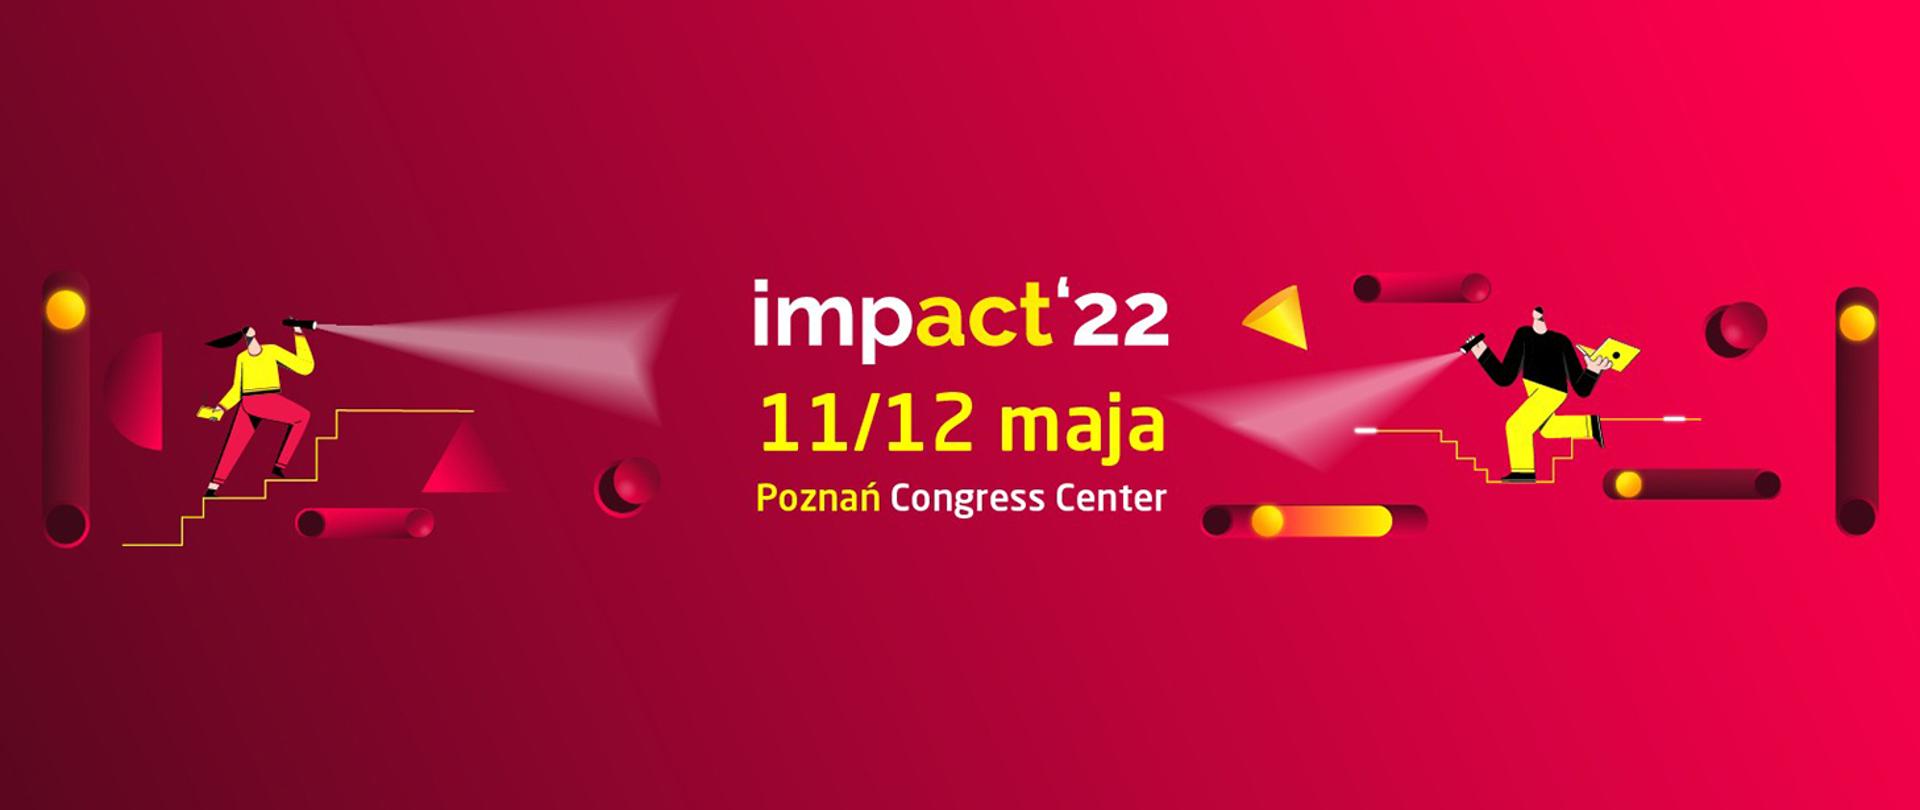 czerwona grafika z żółtymi literami IMPACT 22